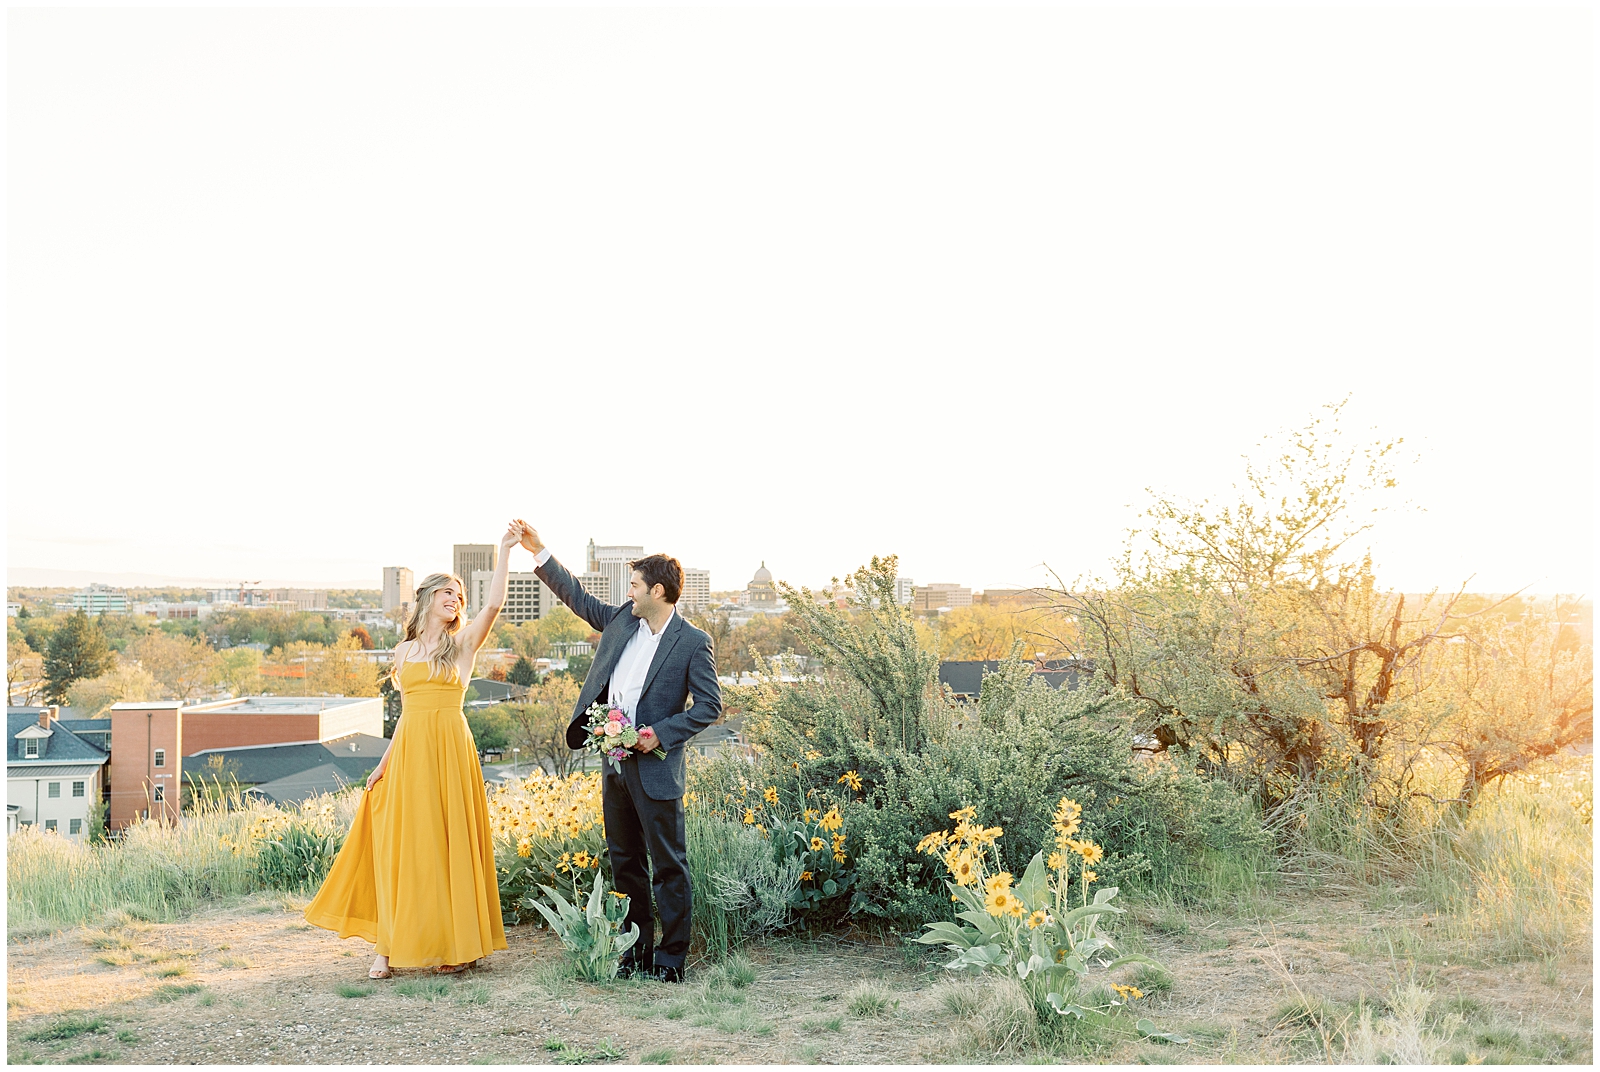 Elegant Boise Foothills Engagement Session - Boise Idaho Wedding Photographers